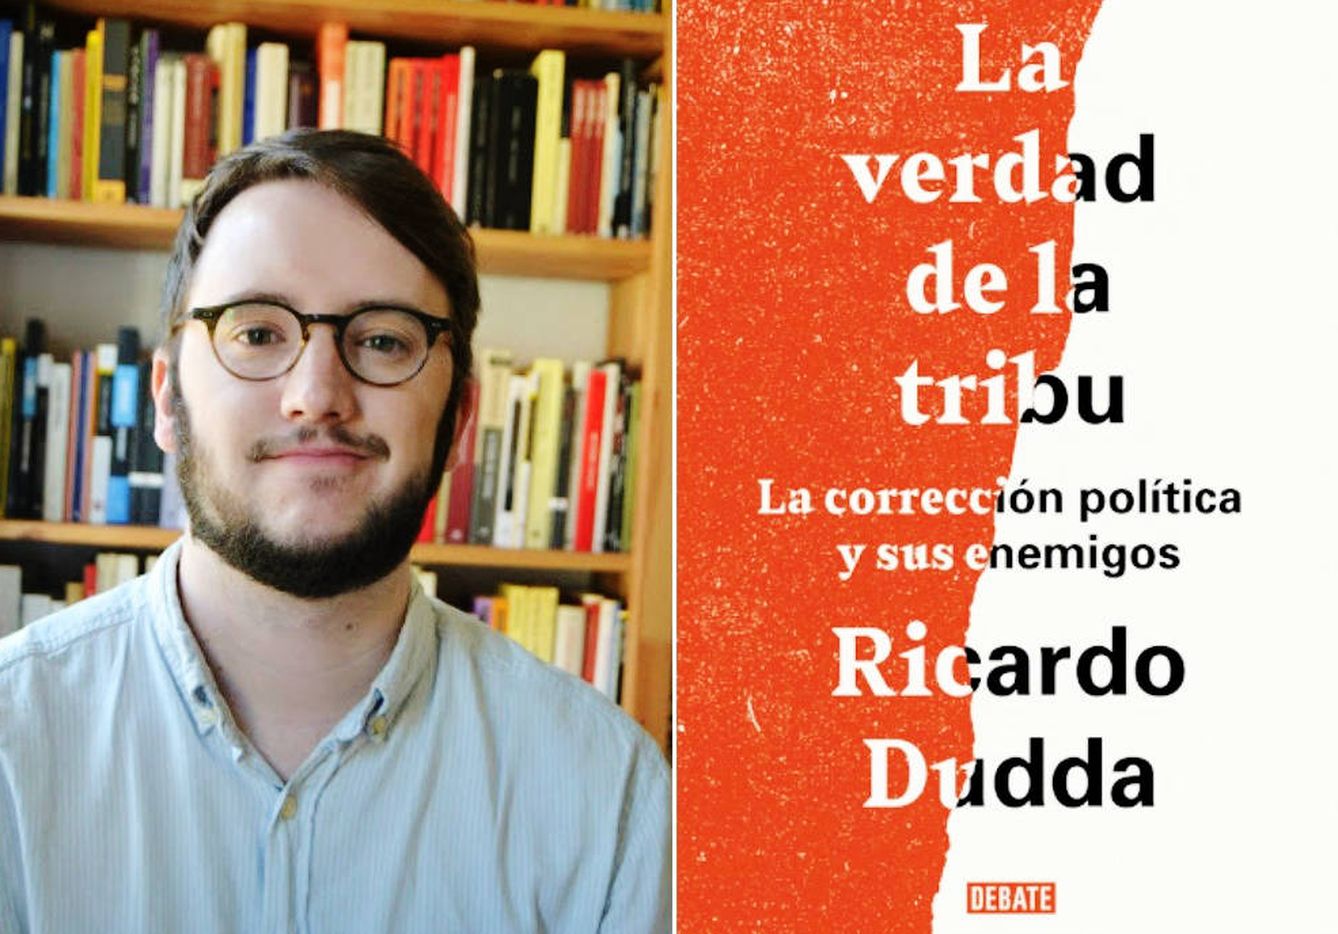 Ricardo Dudda, autor de 'La verdad de la tribu'